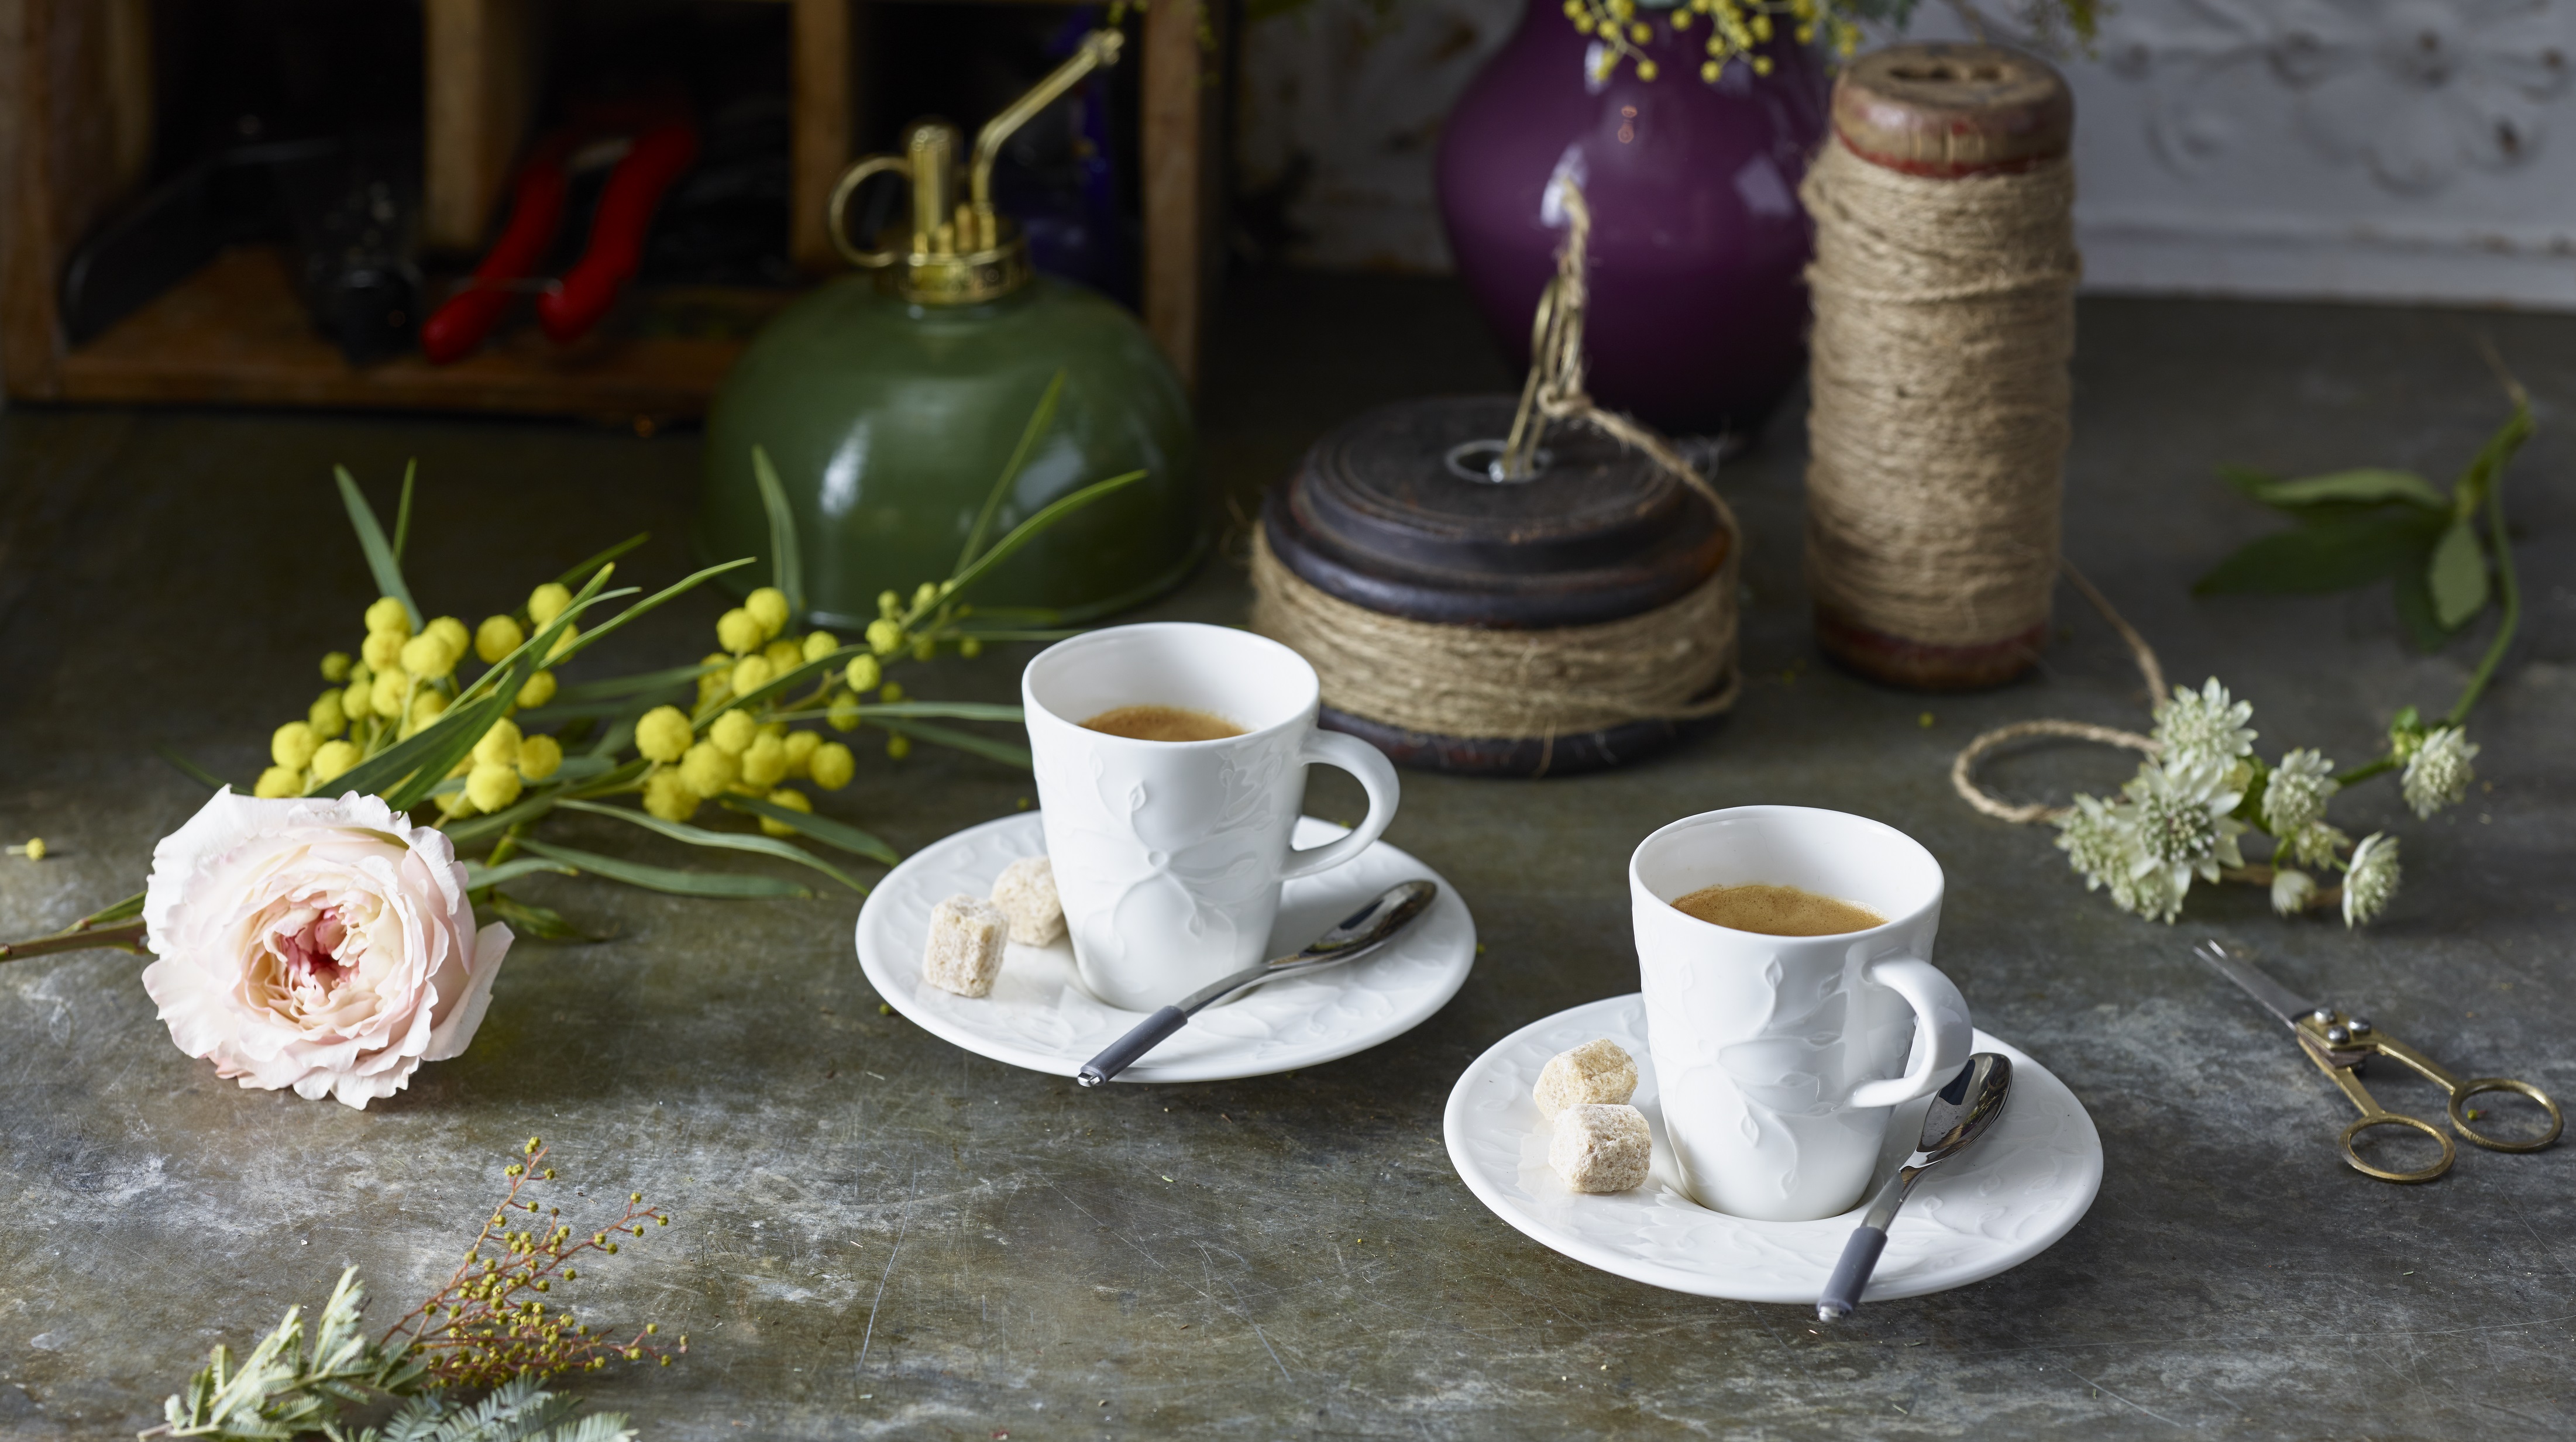 Podwójna przyjemność: aromatyczna kawa w porcelanie od Villeroy & Boch